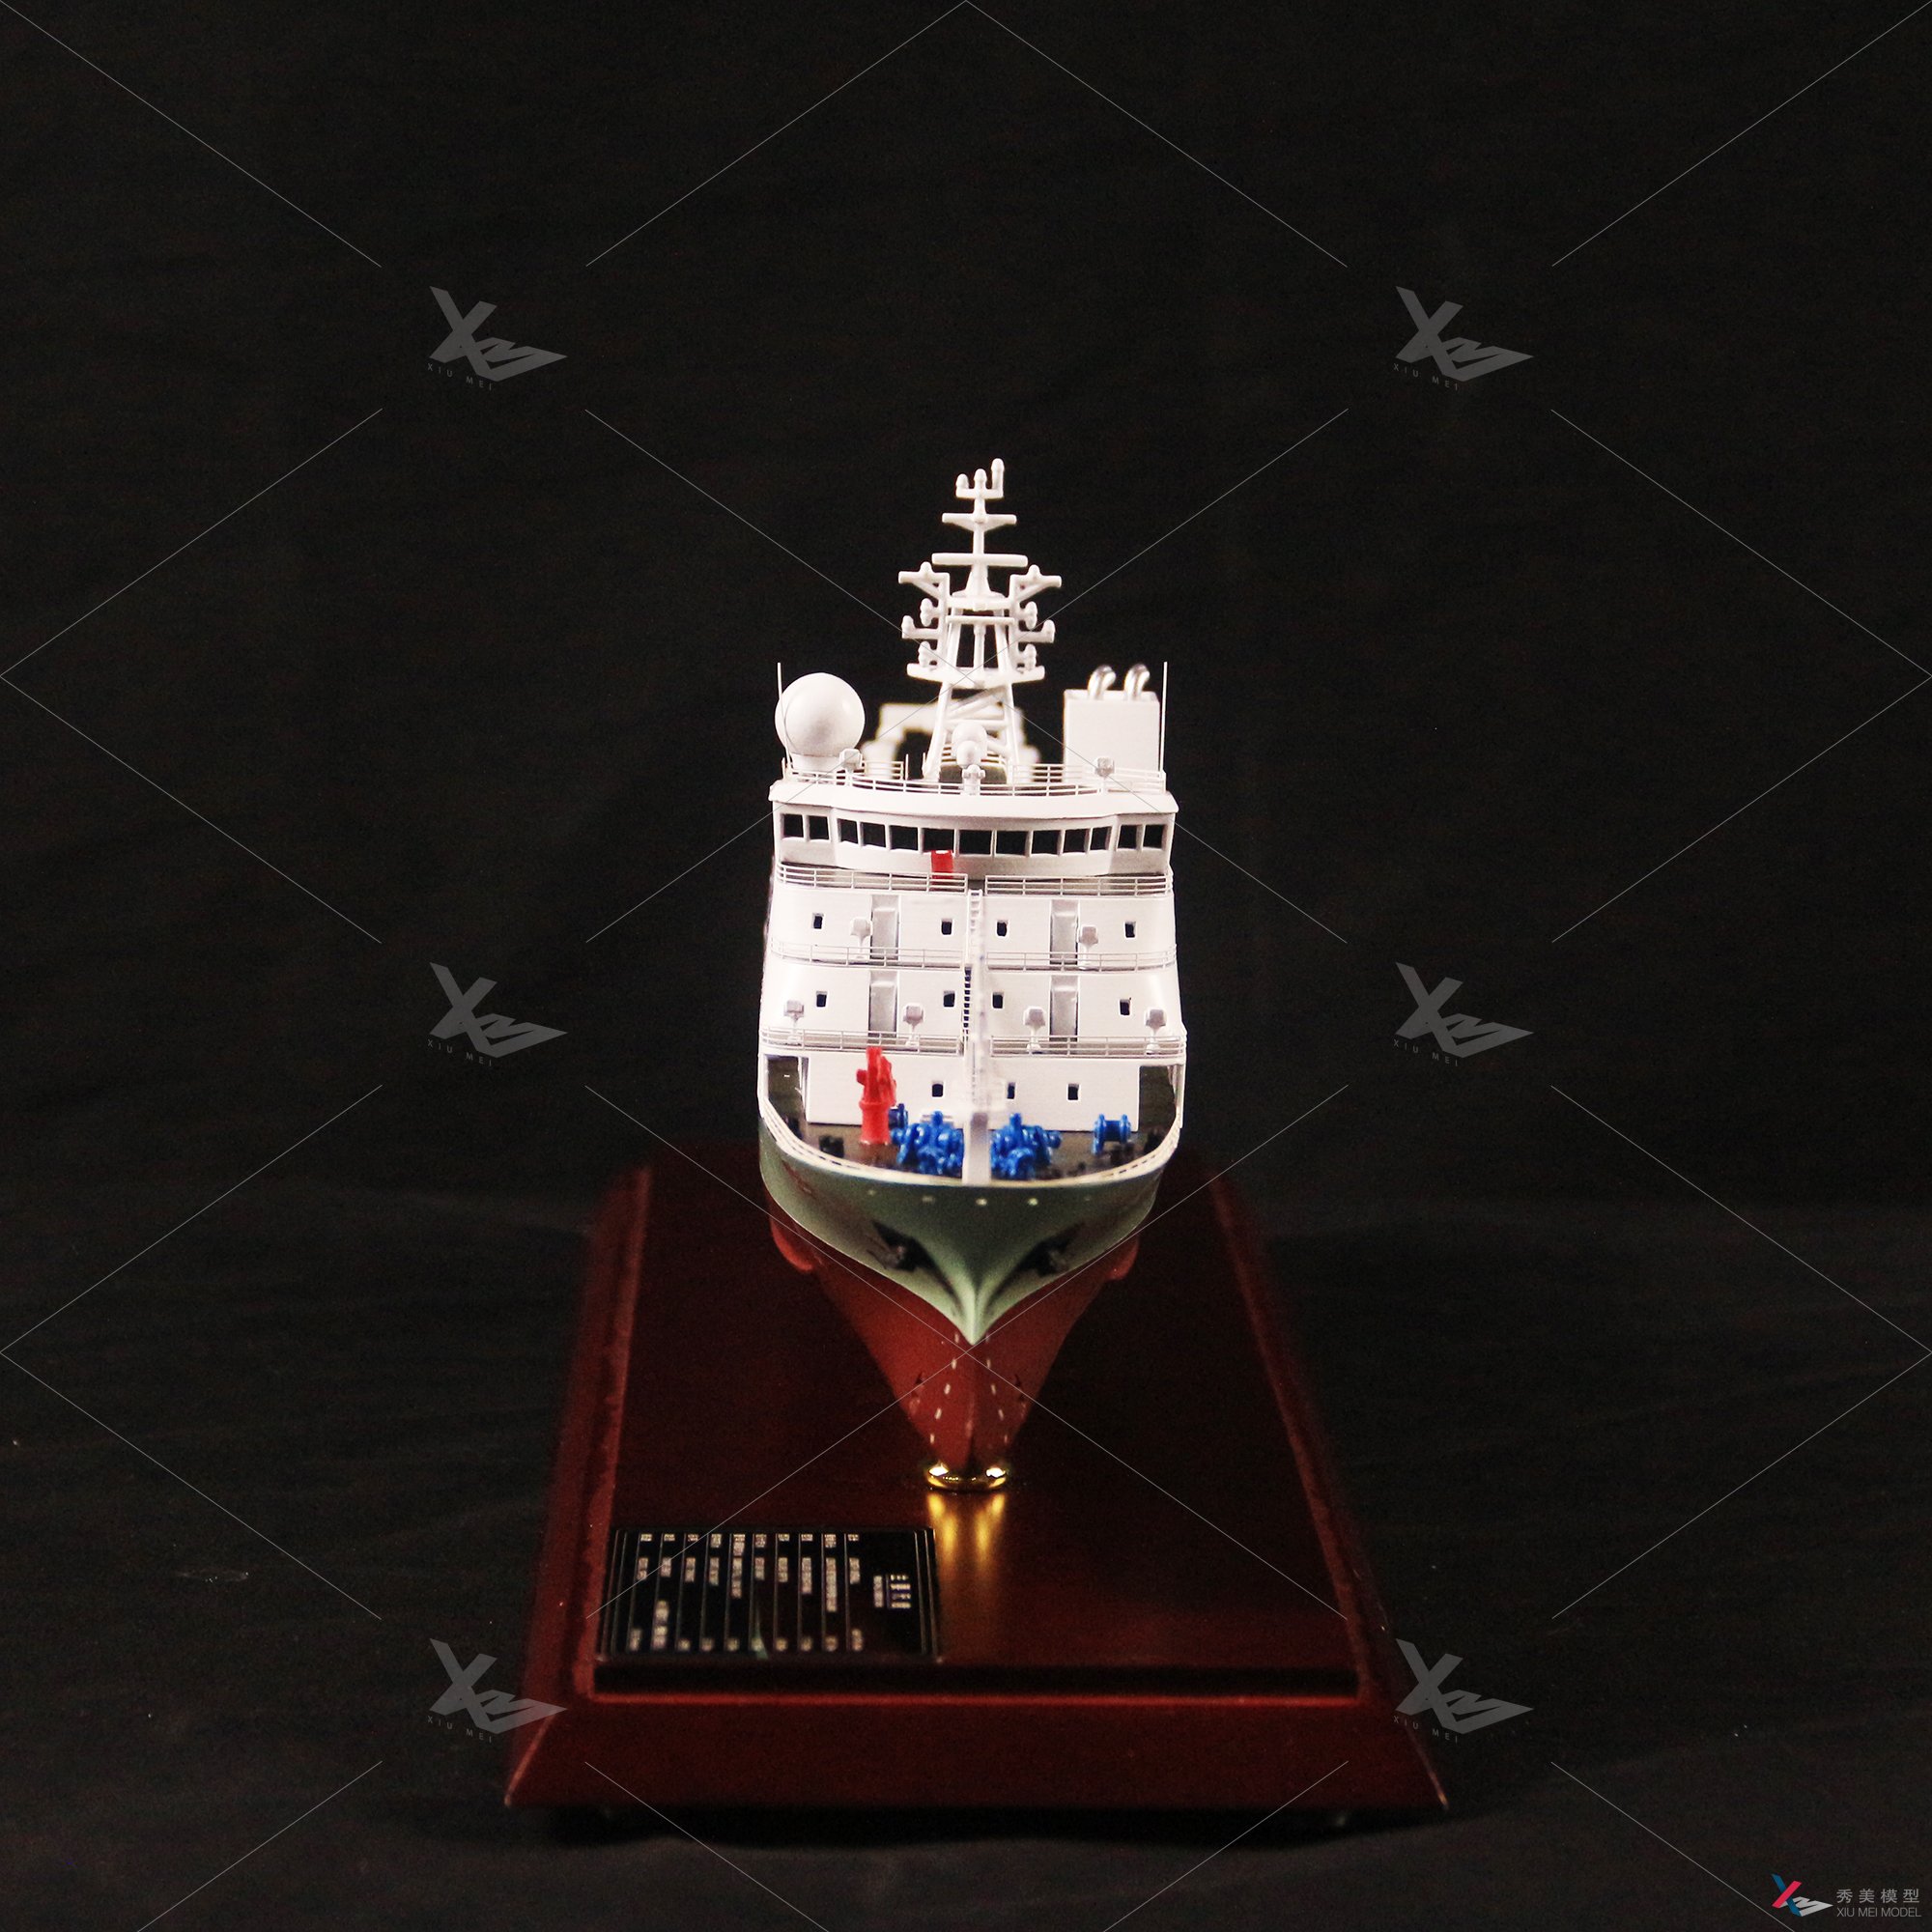 上海秀美模型科学考察船“实验6”号船舶模型